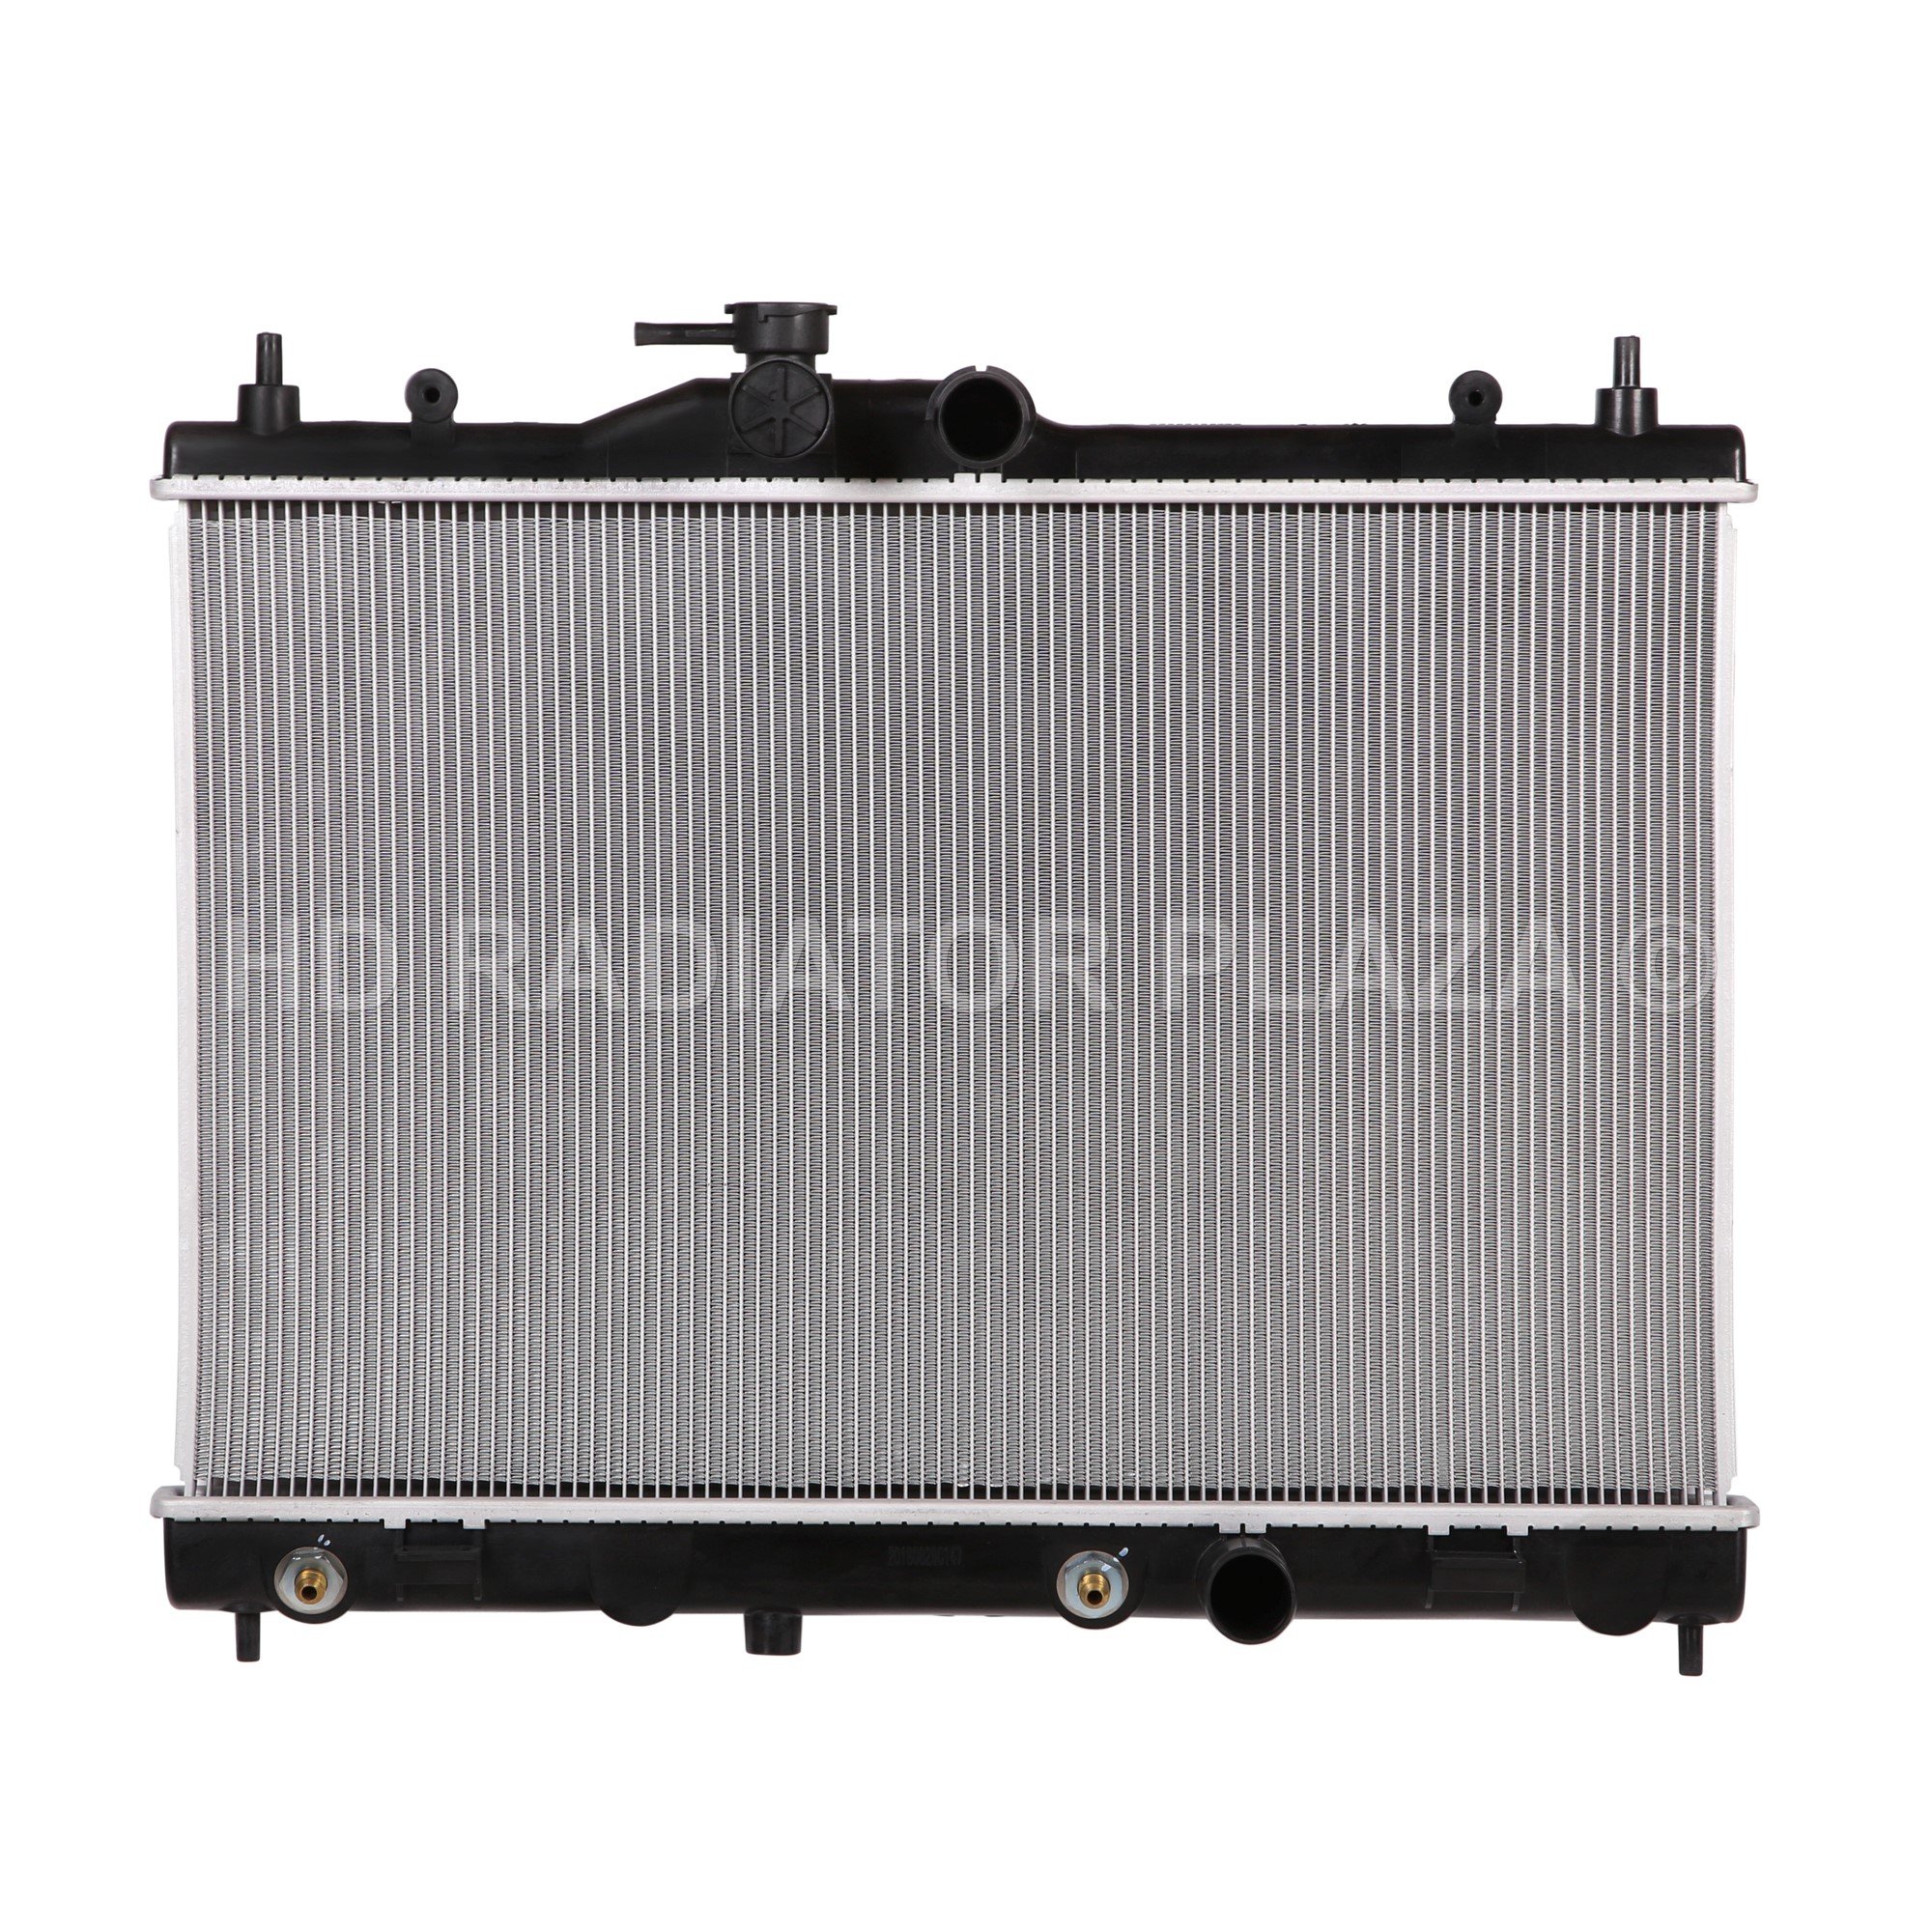 Radiator for 07-12 2007-2012 Nissan Versa 1.6L/1.8L I4